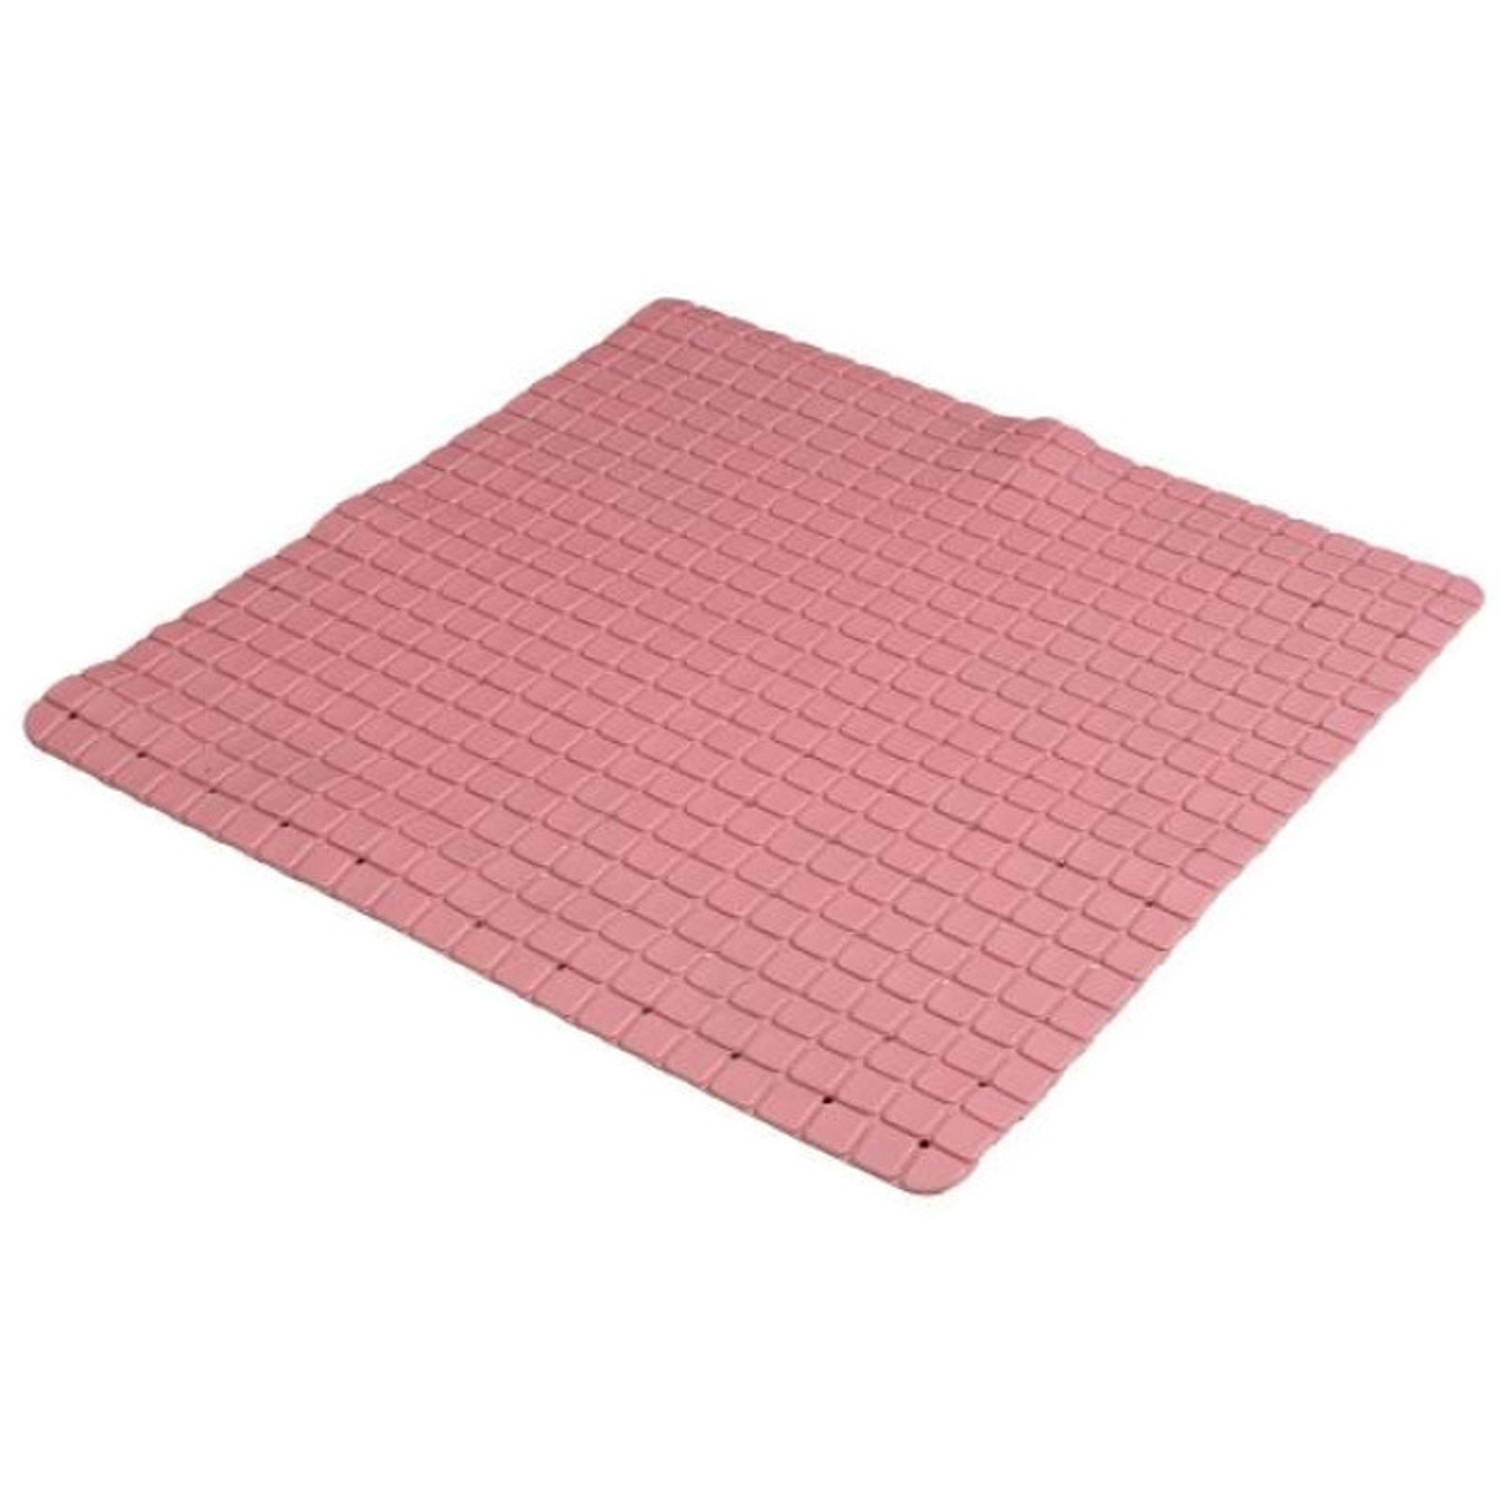 Urban Living Badkamer-douche anti slip mat rubber voor op de vloer oud roze 55 x 55 cm Badmatjes